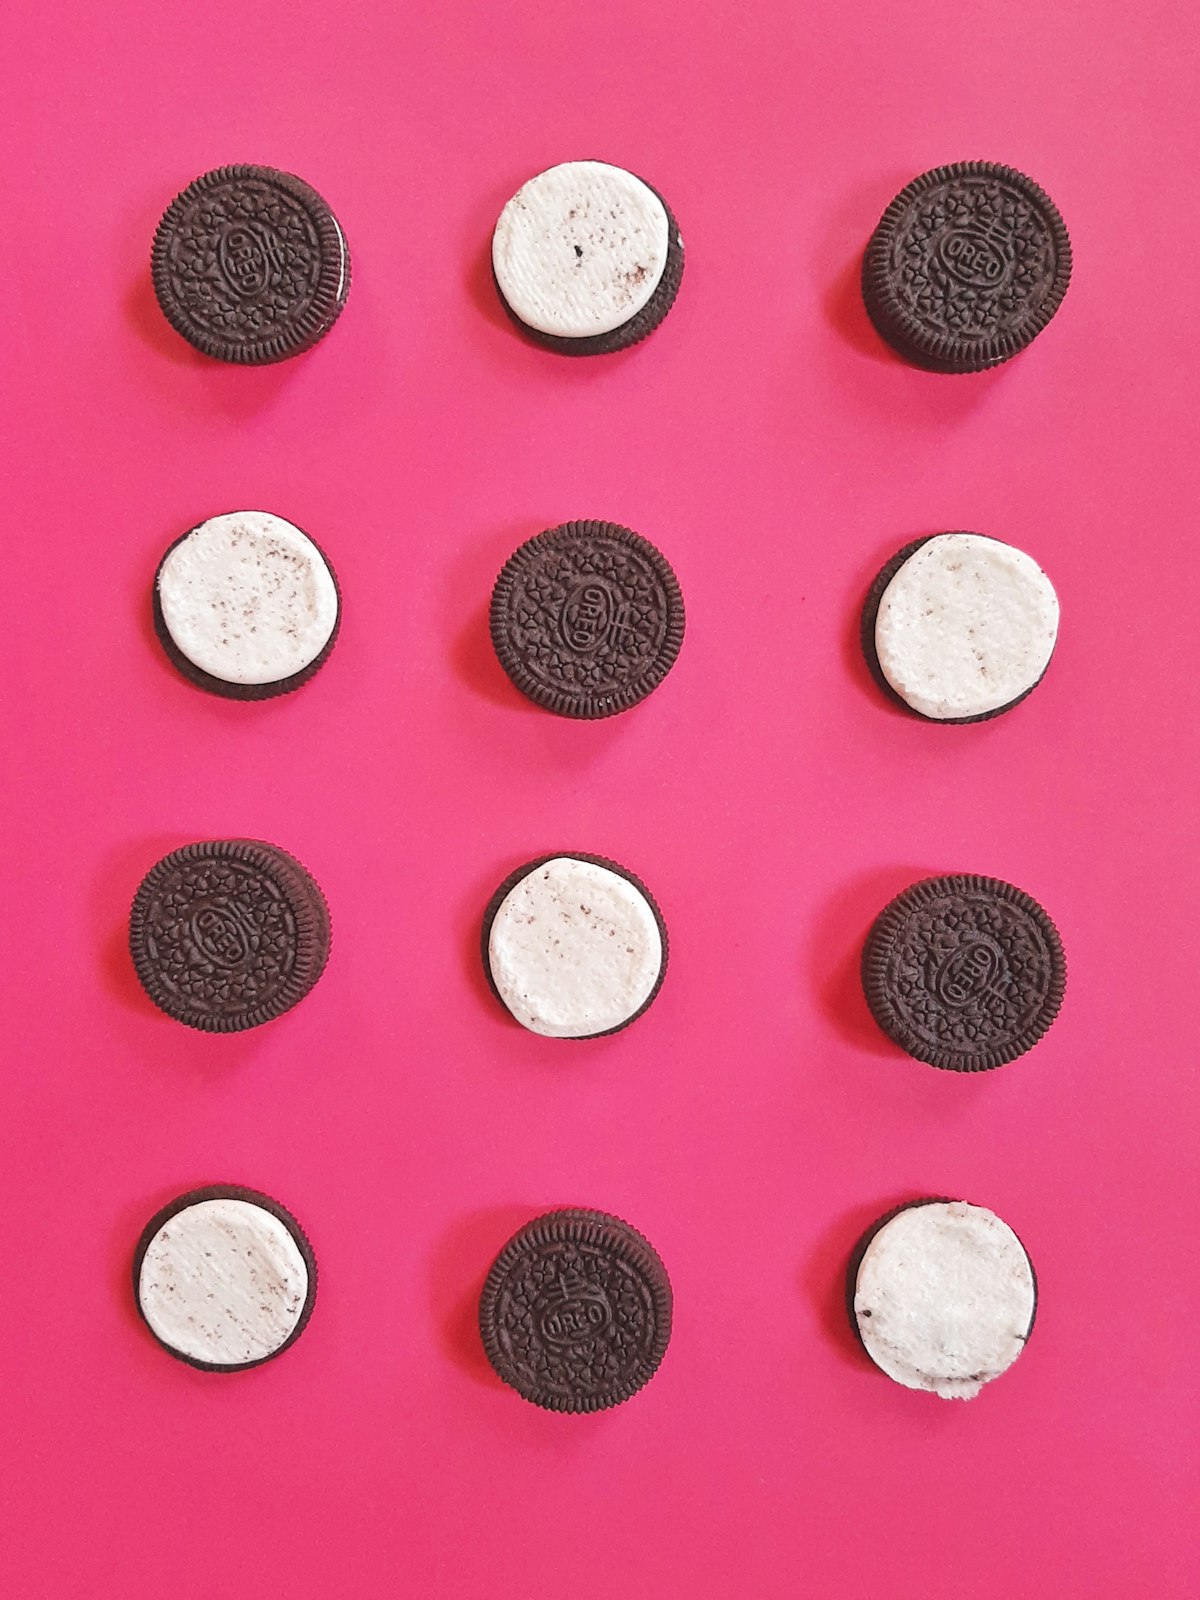 Cómo saltarse las 'Cookies Publicitarias' en una Página Web